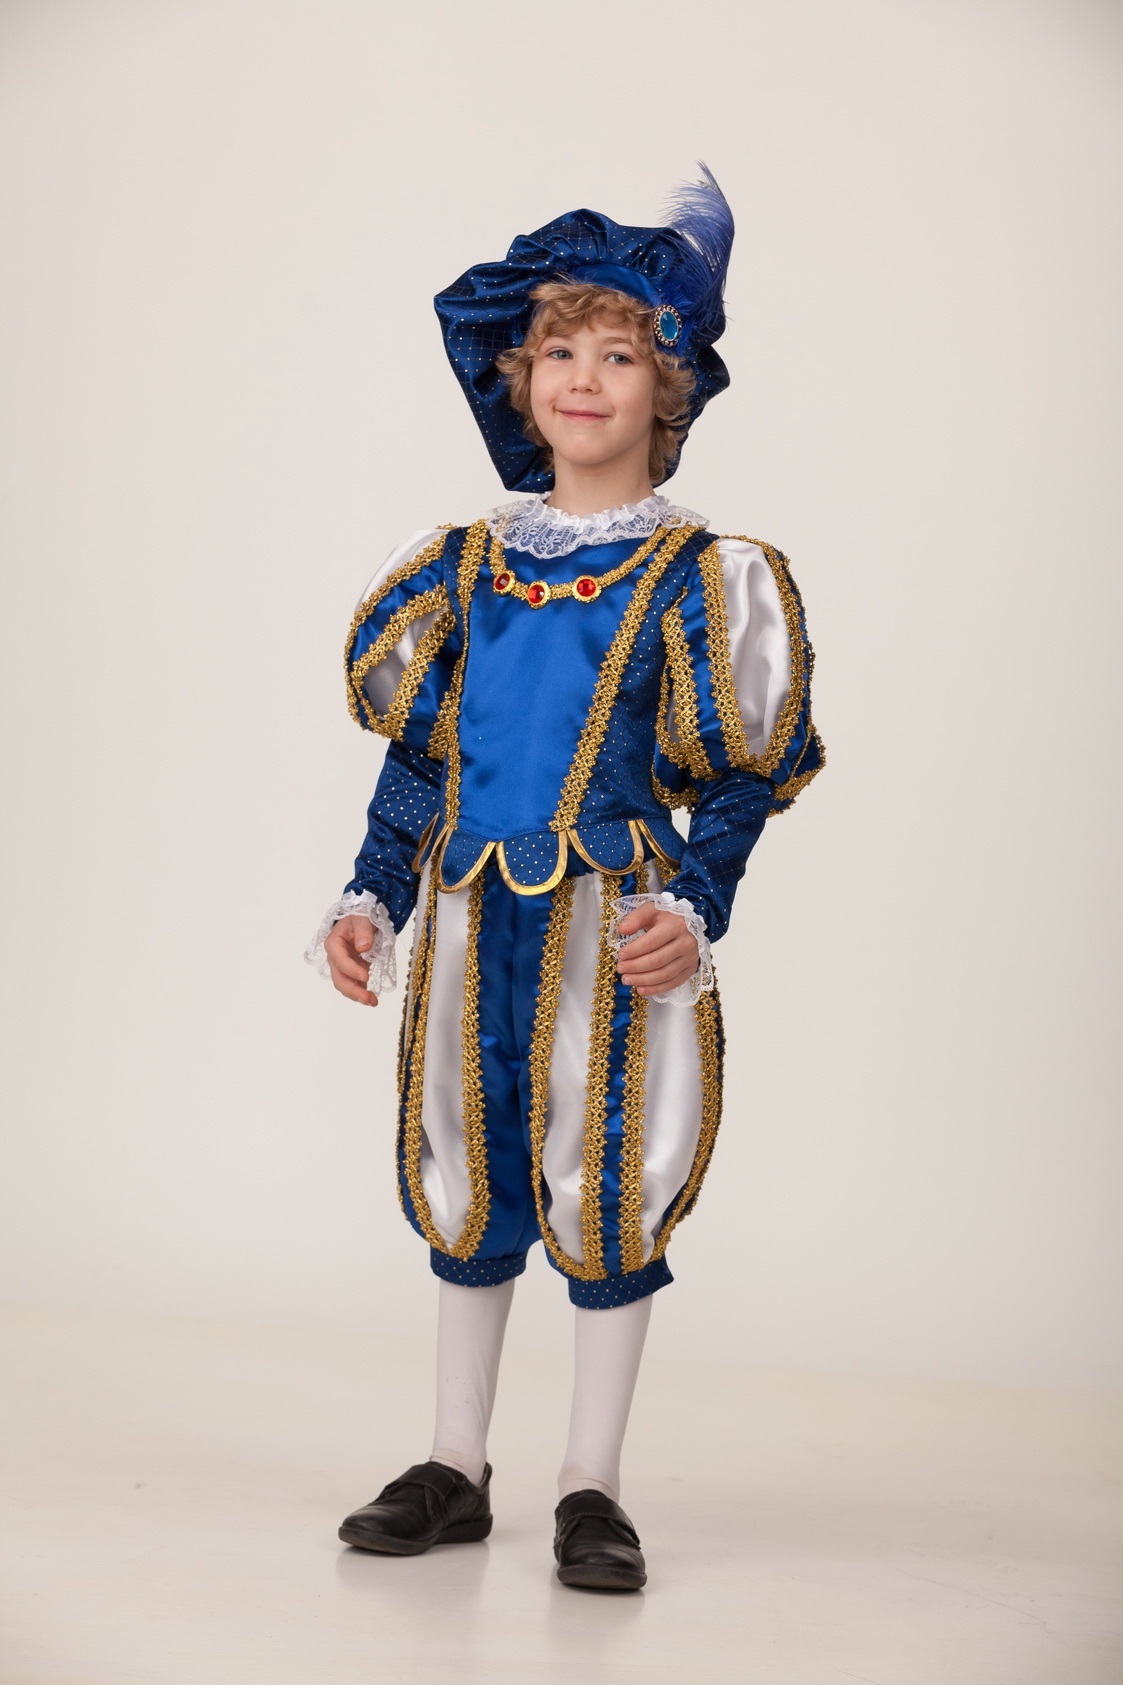 Купить костюм принца для мальчика в интернет-магазине